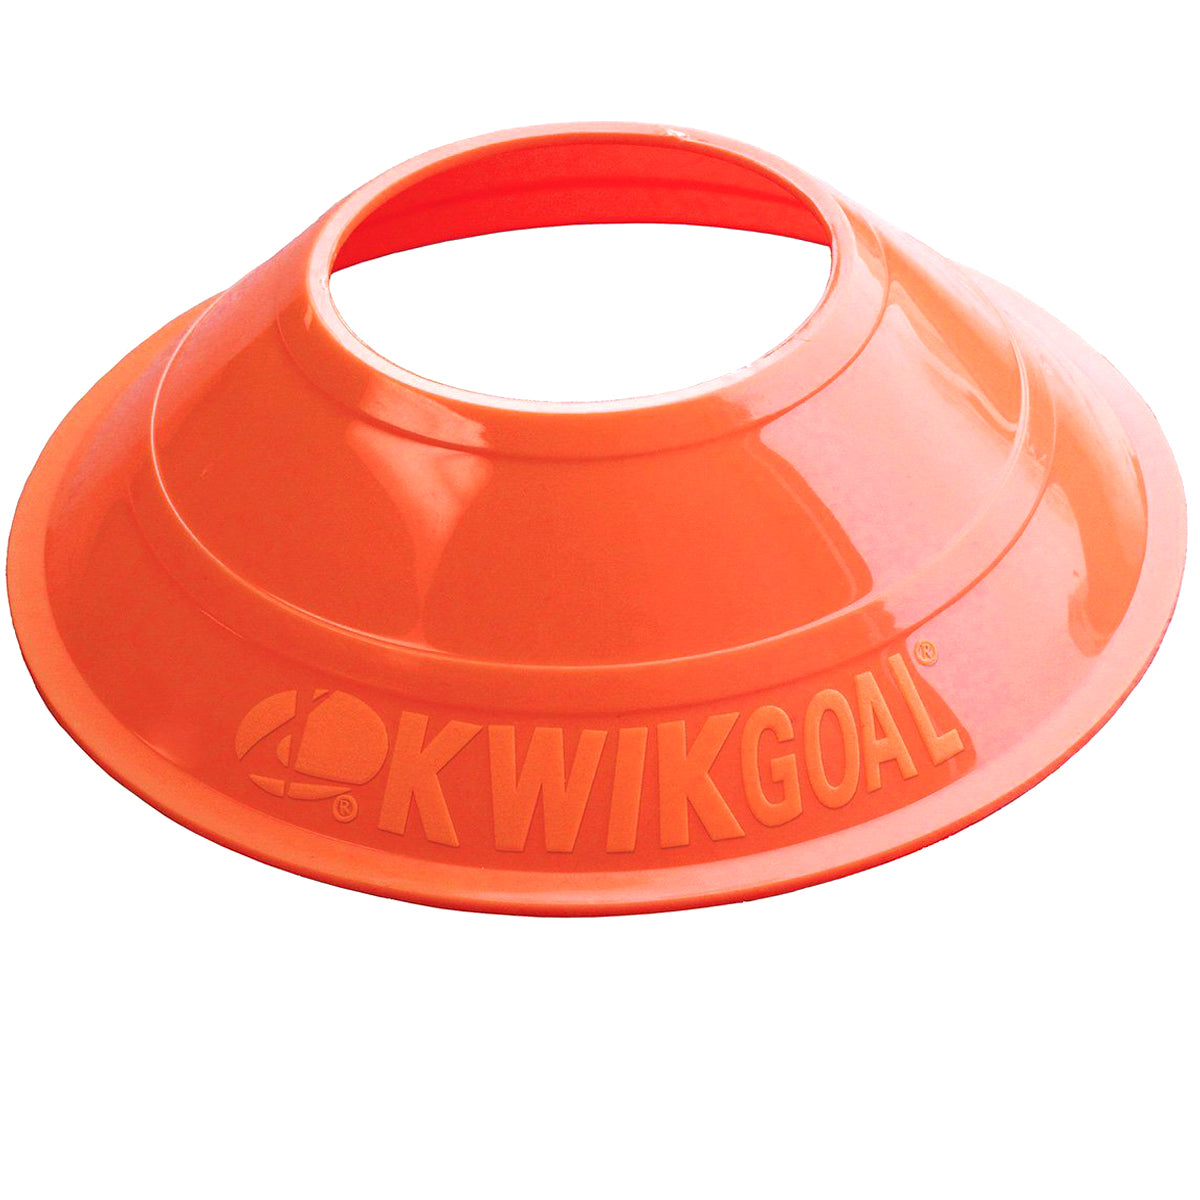 Kwikgoal Mini Disc Cones Soccer Coaching Equipment | 6A14 Field equipment Kwikgoal Orange 